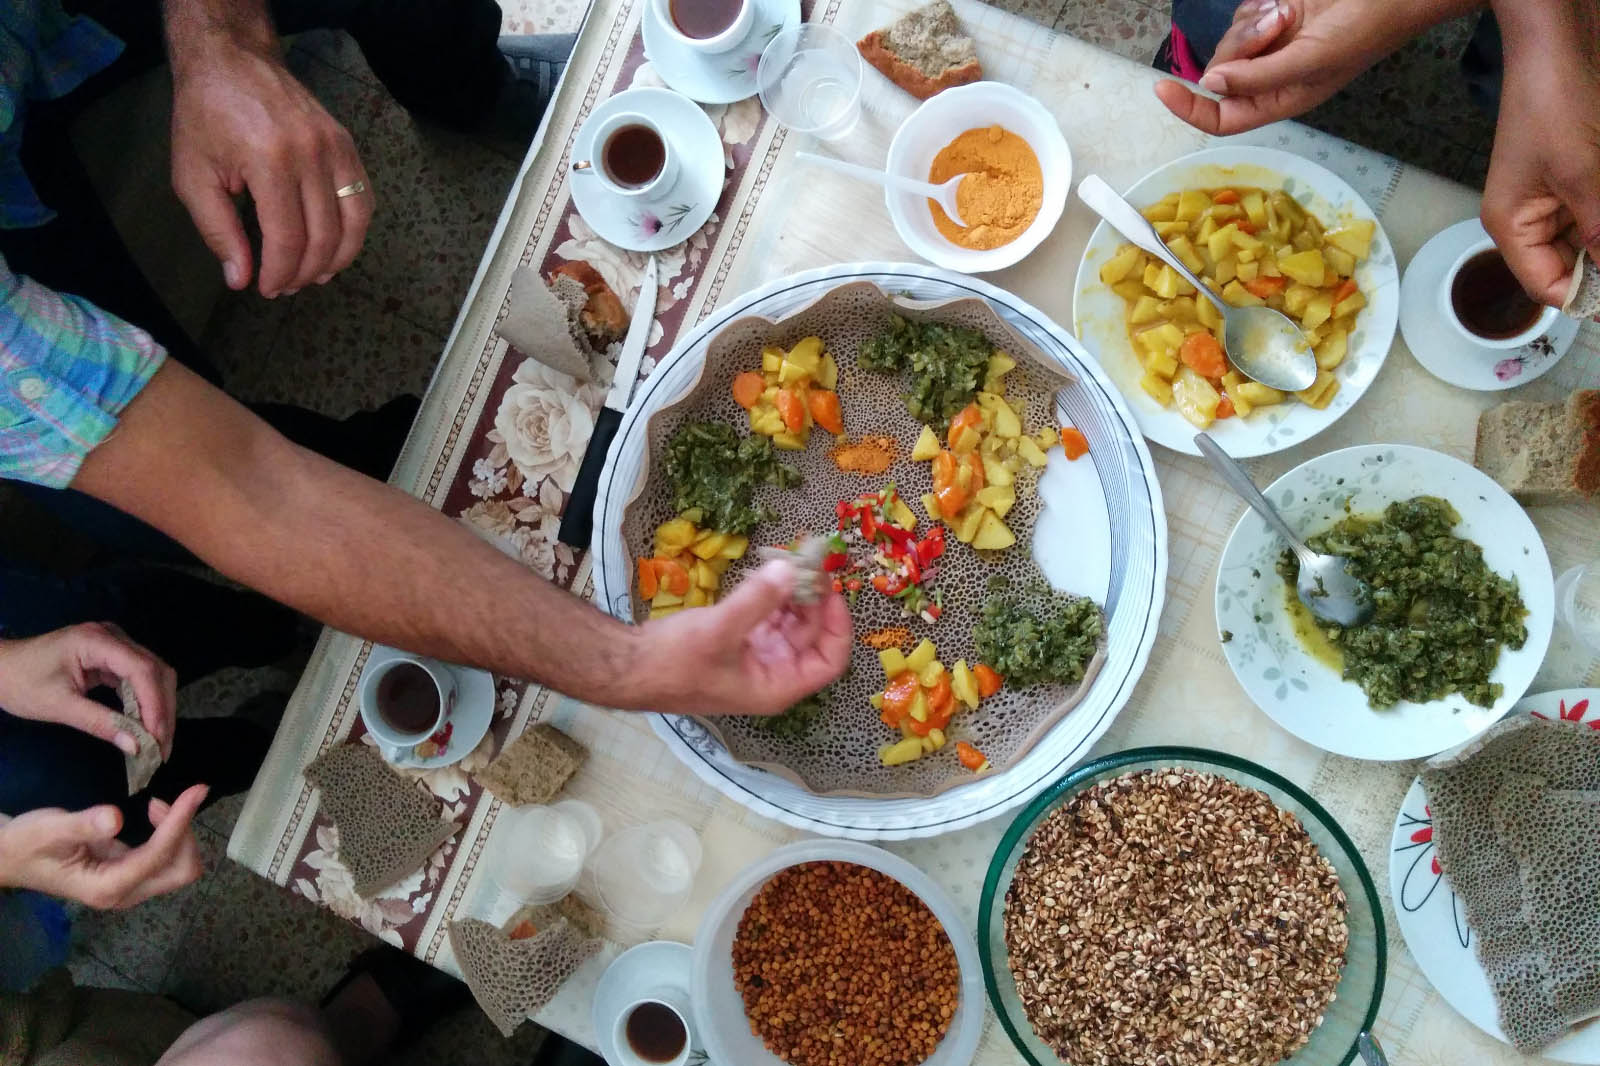 אירוח אתיופי מסורתי מתוצרת הגינה (צילום: אלבום פרטי)